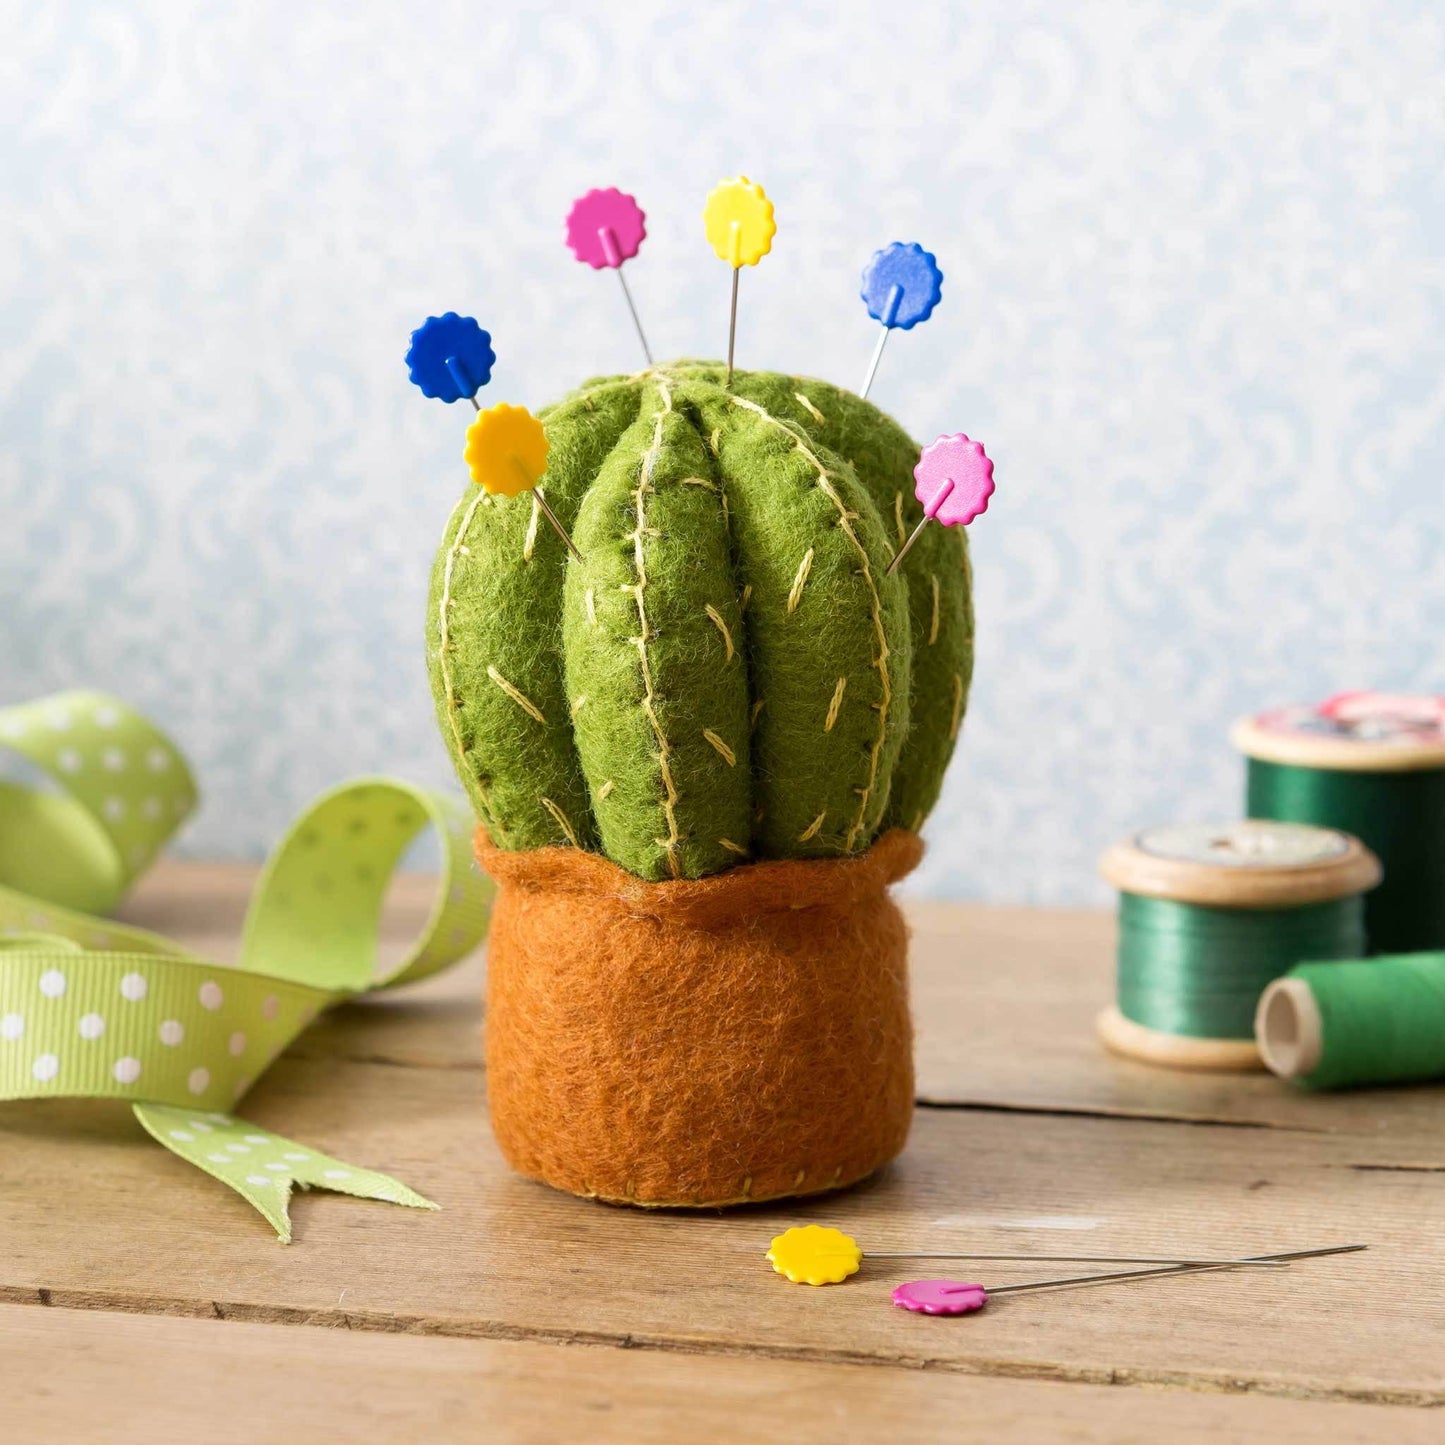 Cactus Pincushion